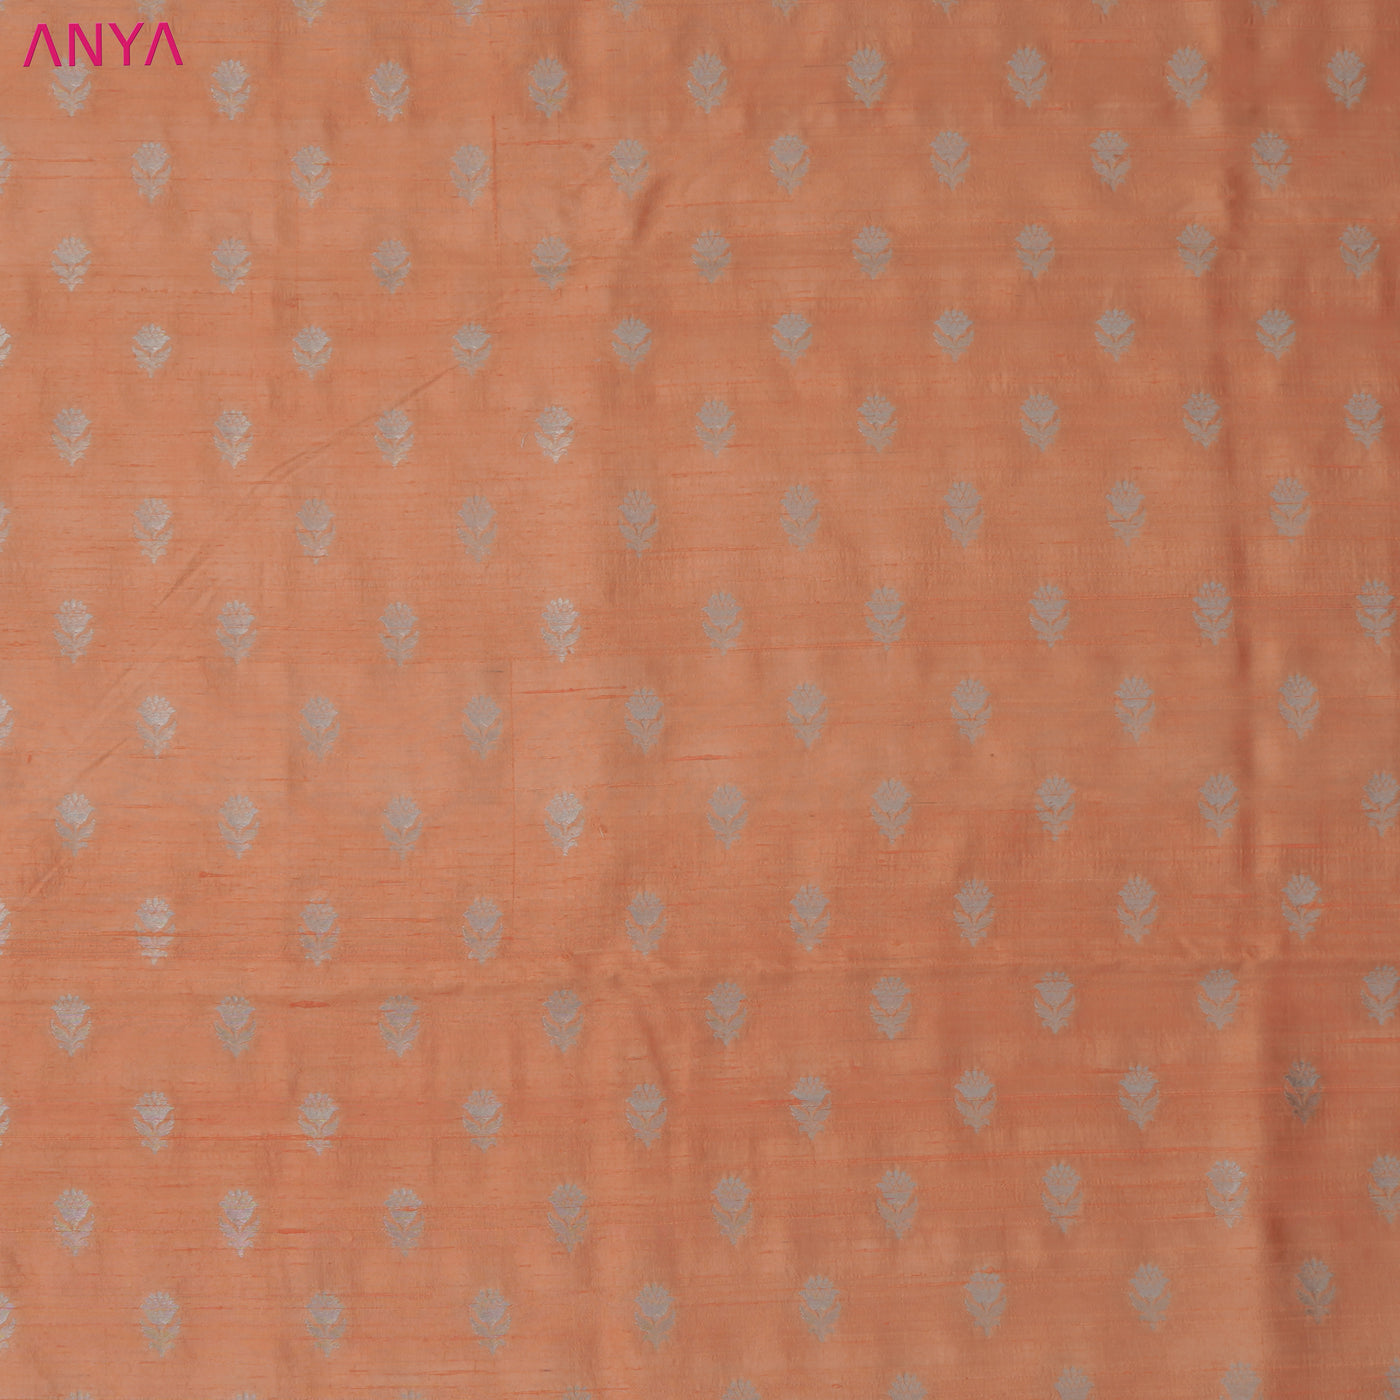 Peach Tussar Raw Silk Fabric with Small Zari Butta Design